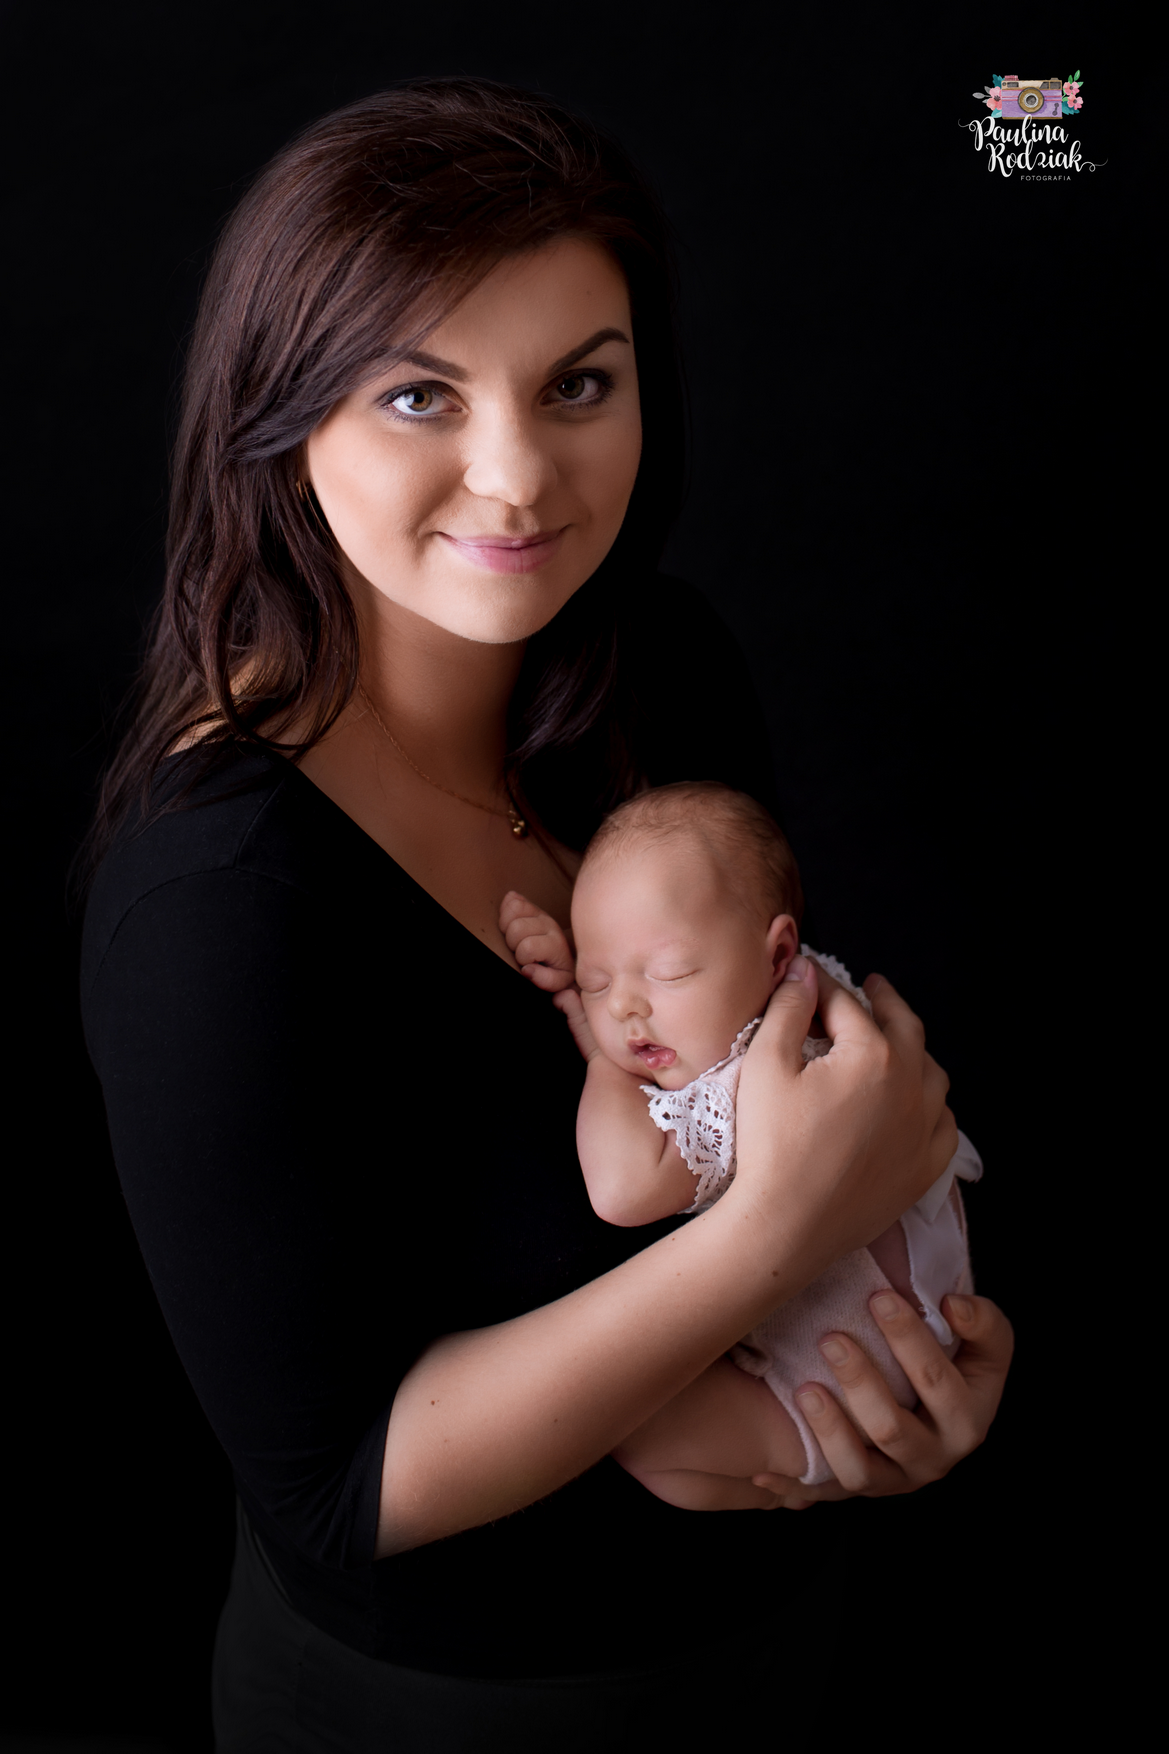 fotograf bydgoszcz paulina-rodziak-fotografia portfolio zdjecia noworodkow sesje noworodkowe niemowlę